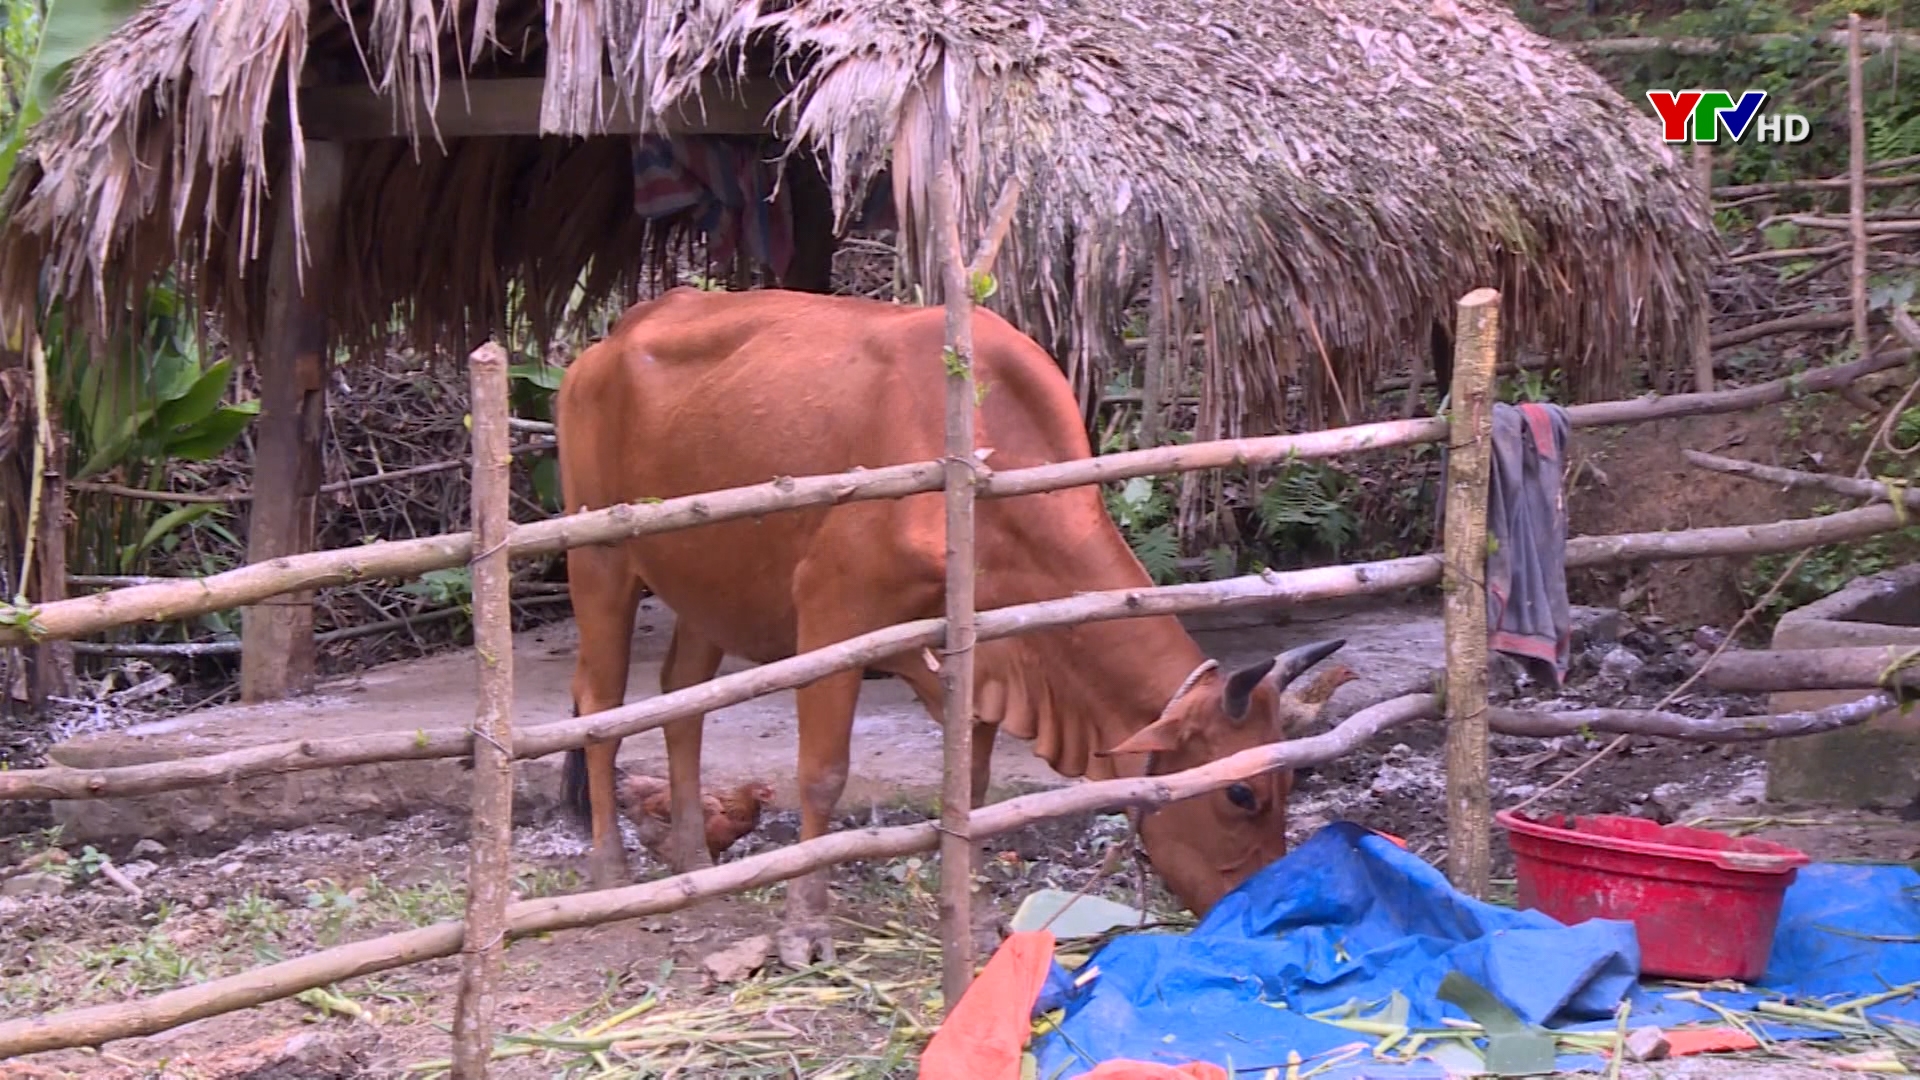 Xã Vĩnh lạc, huyện Lục Yên phát sinh bệnh viêm da nổi cục trên gia súc